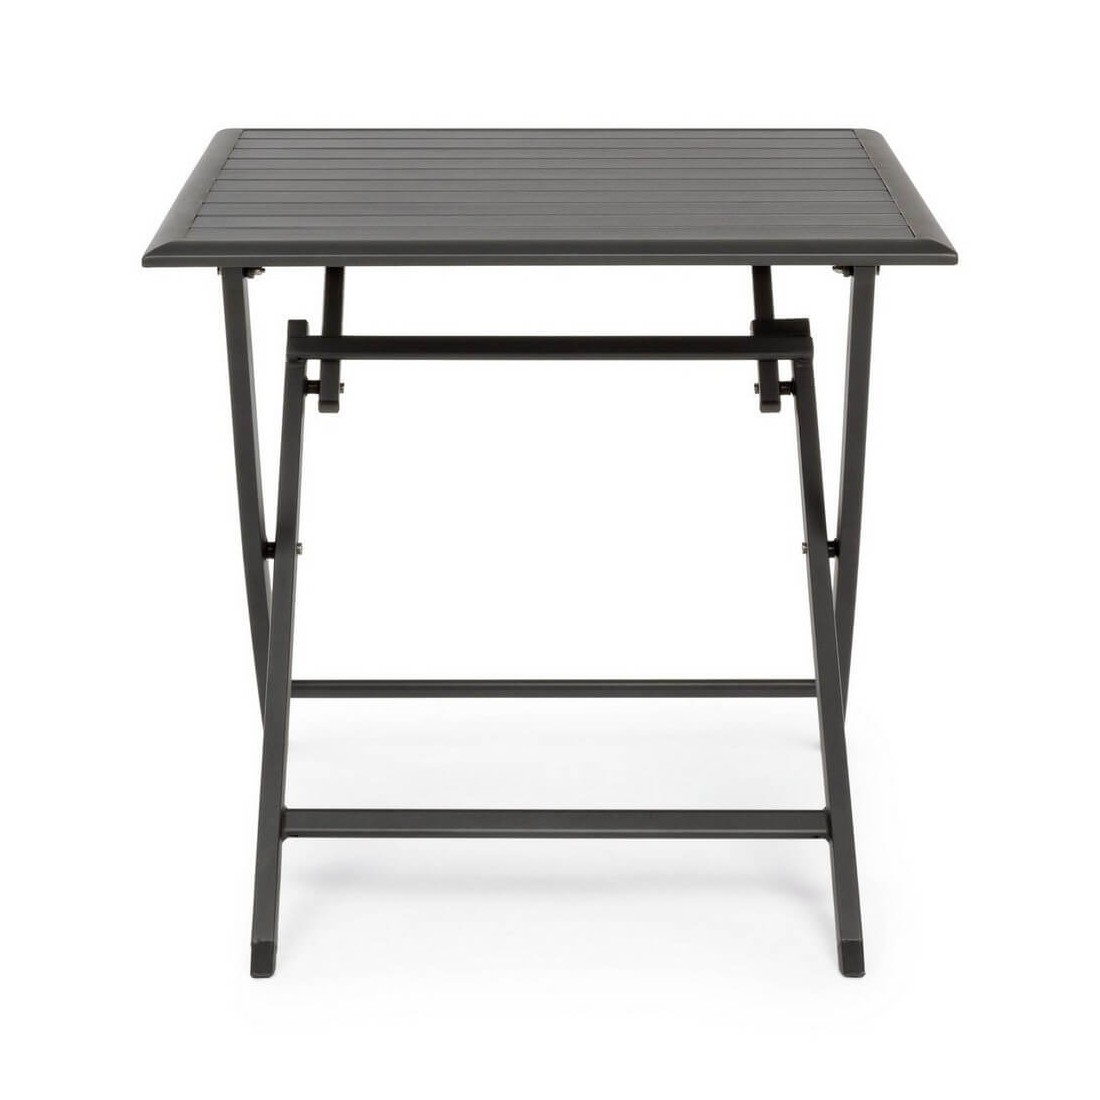 PIEGHEVOLE 120x80 tavolo chiudibile in metallo zincato antracite per esterno